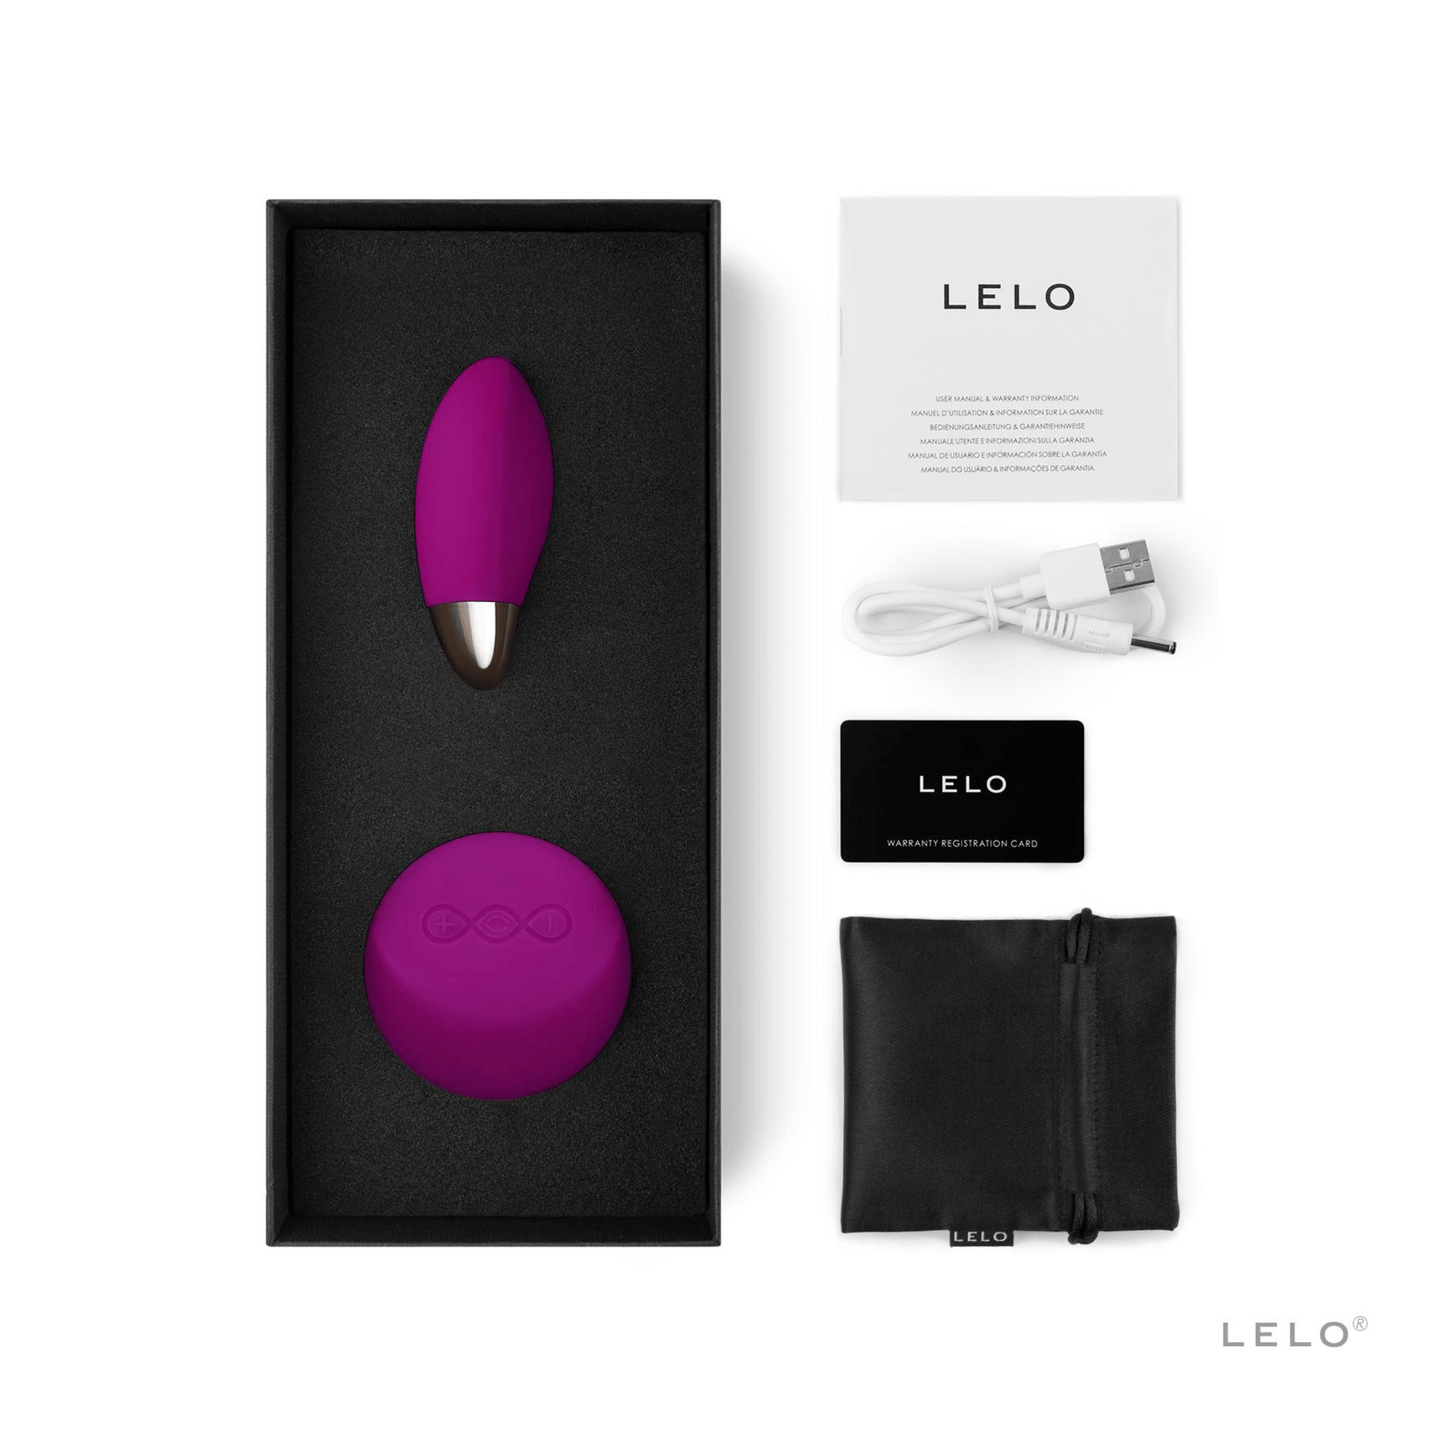 Lyla 2 de Lelo en rose fuchsia, sextoy haut de gamme avec télécommande sans fil, présenté dans son écrin luxueux, vendu exclusivement chez OhMyGodz.fr.